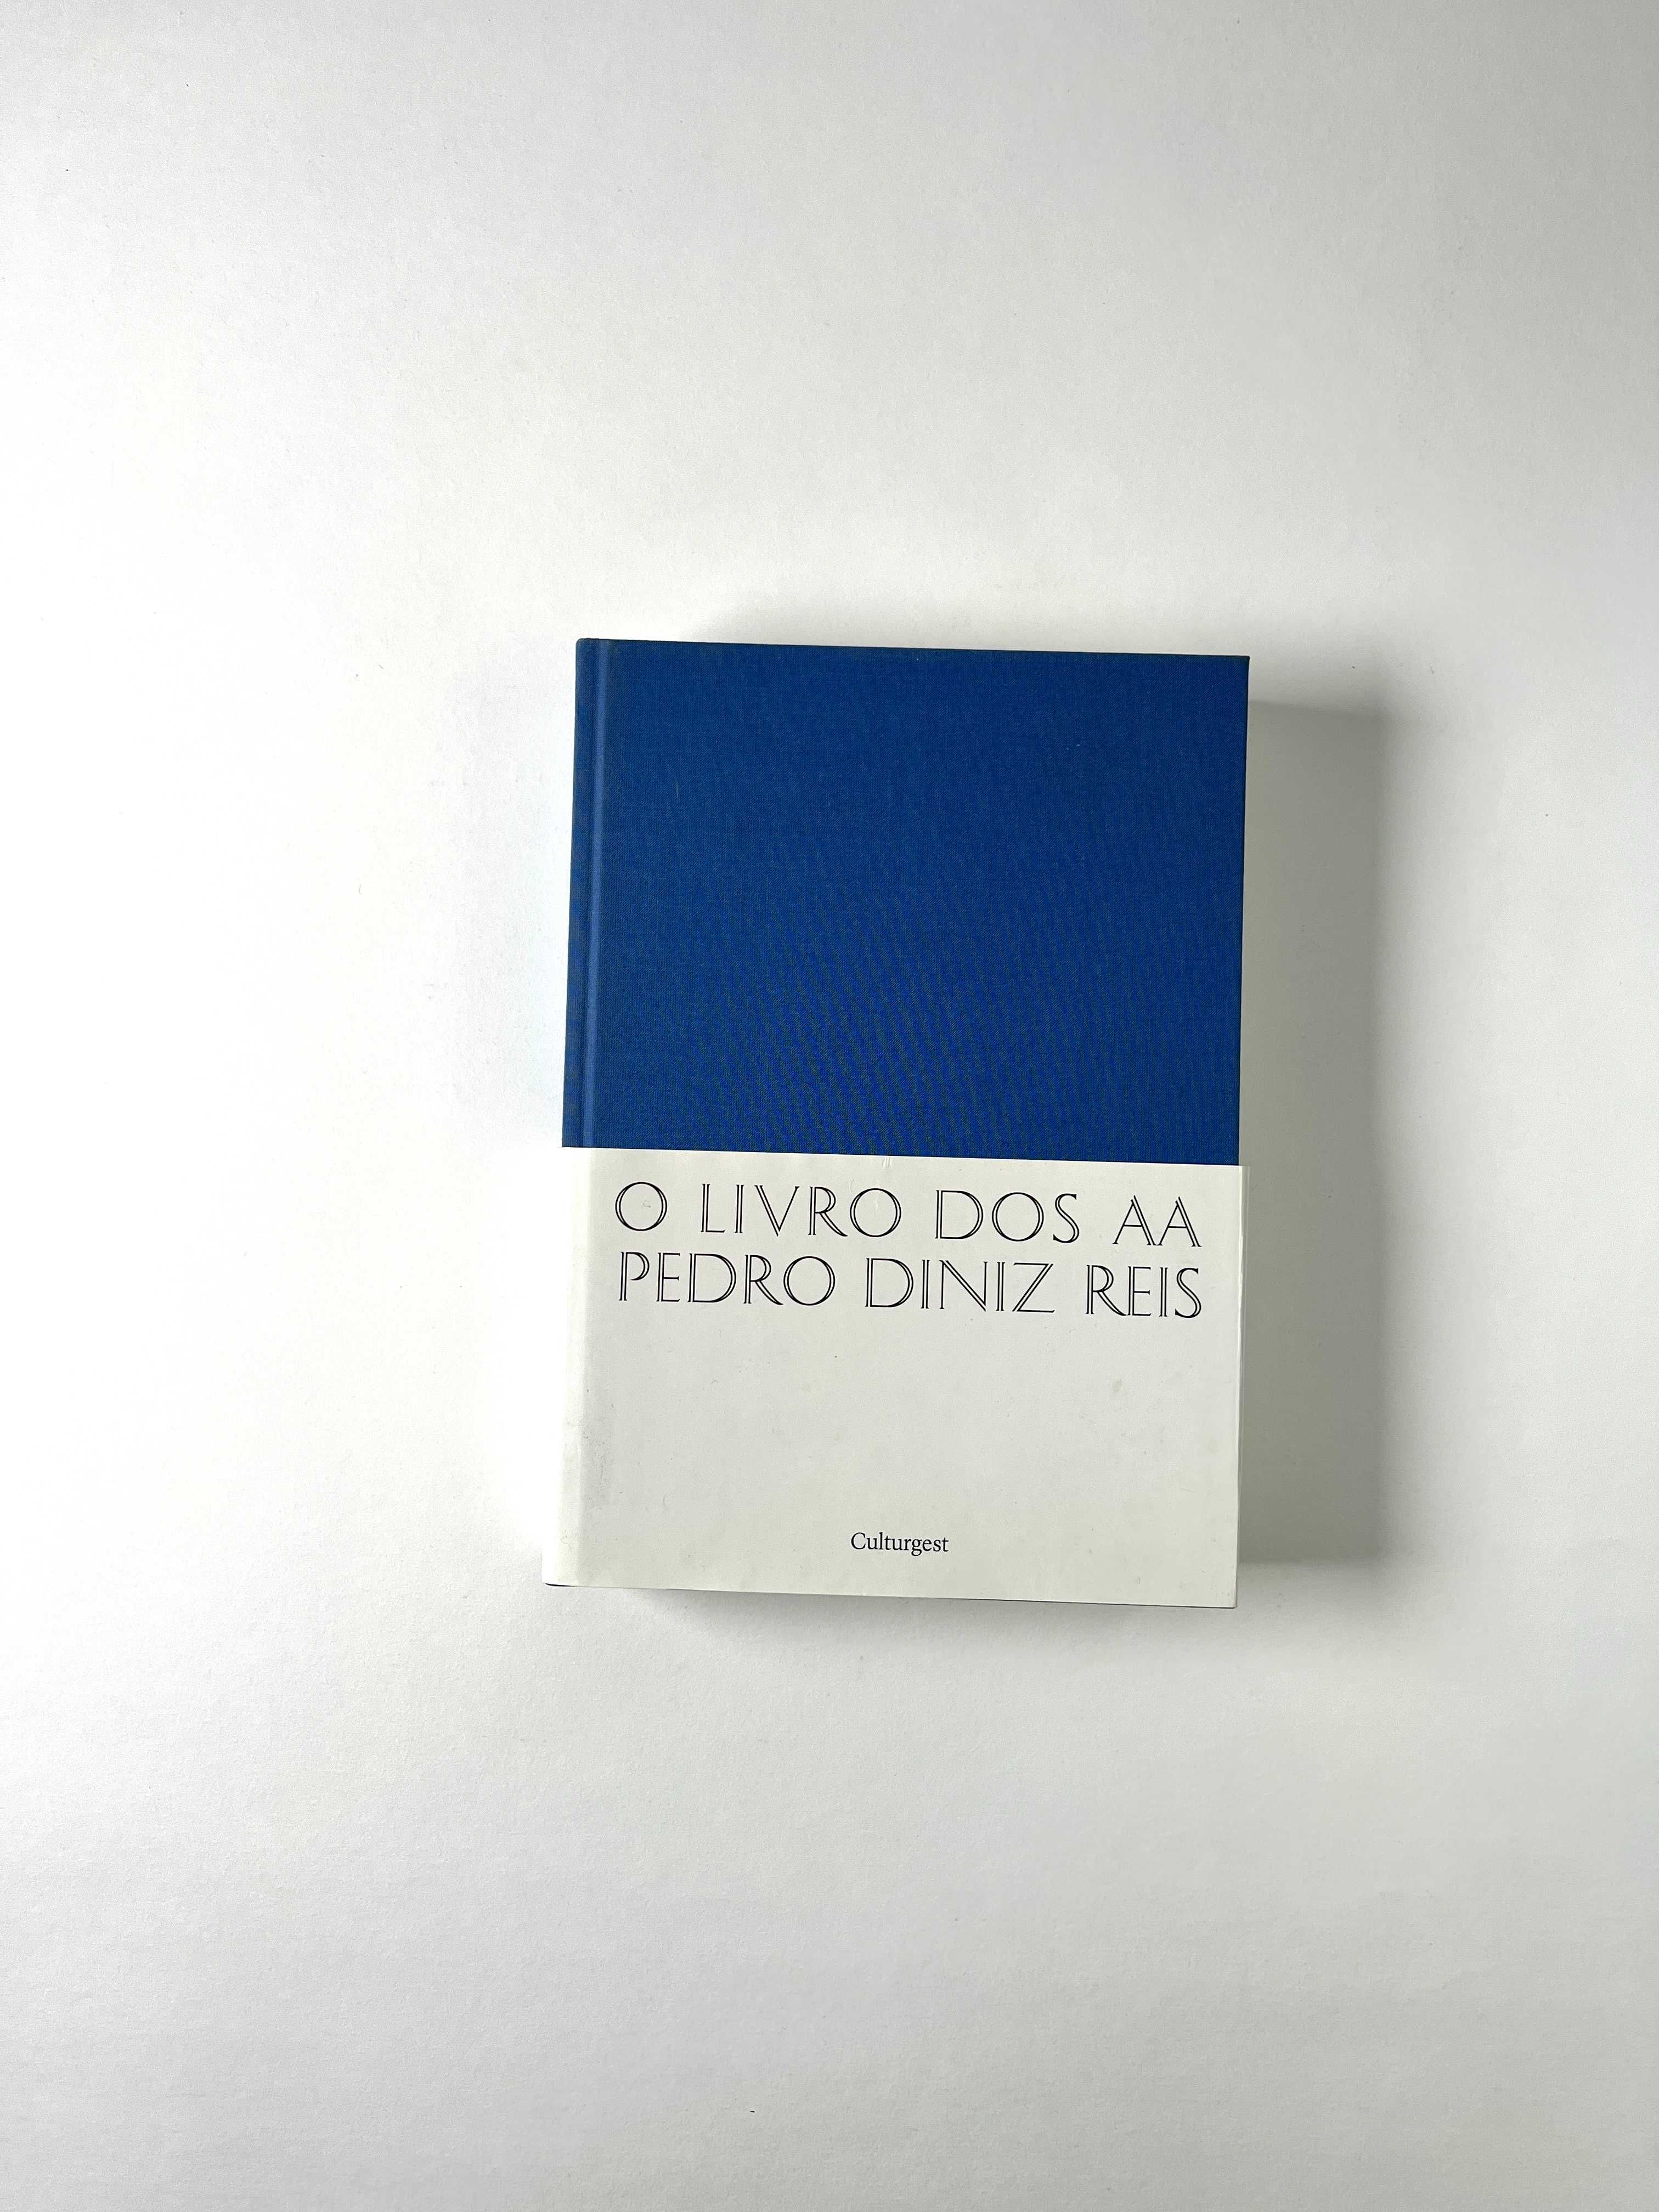 Pedro Diniz Reis – O Livro dos AA Culturgest 2010